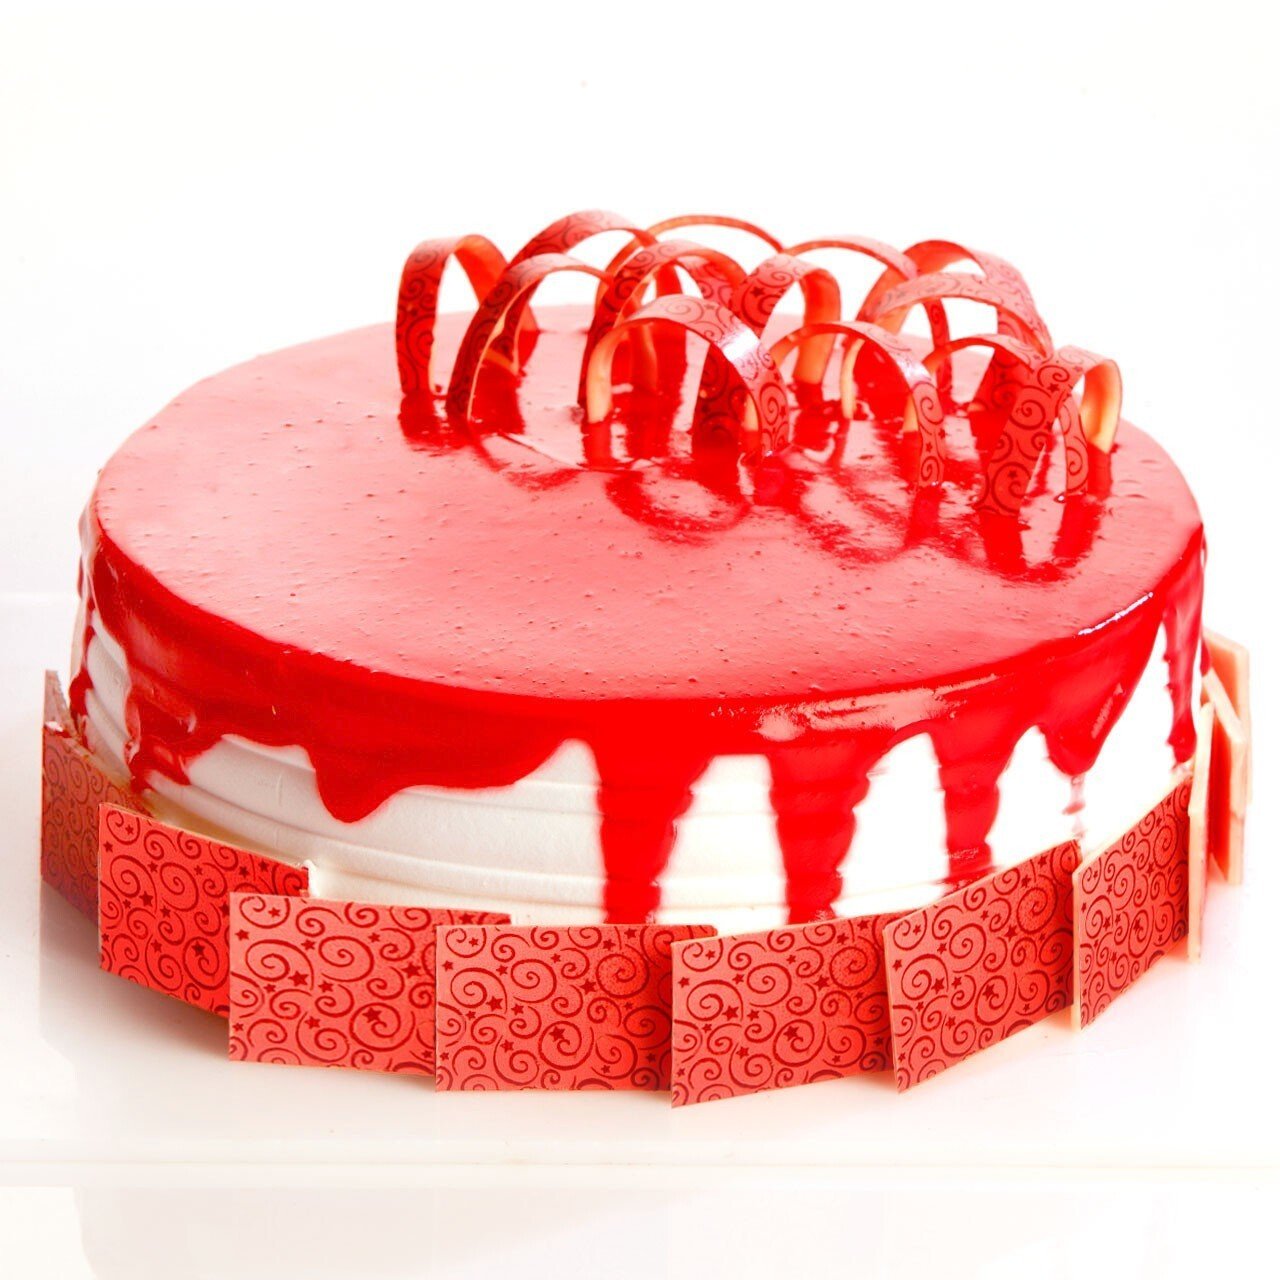 Fantasy Red Velvet Cake